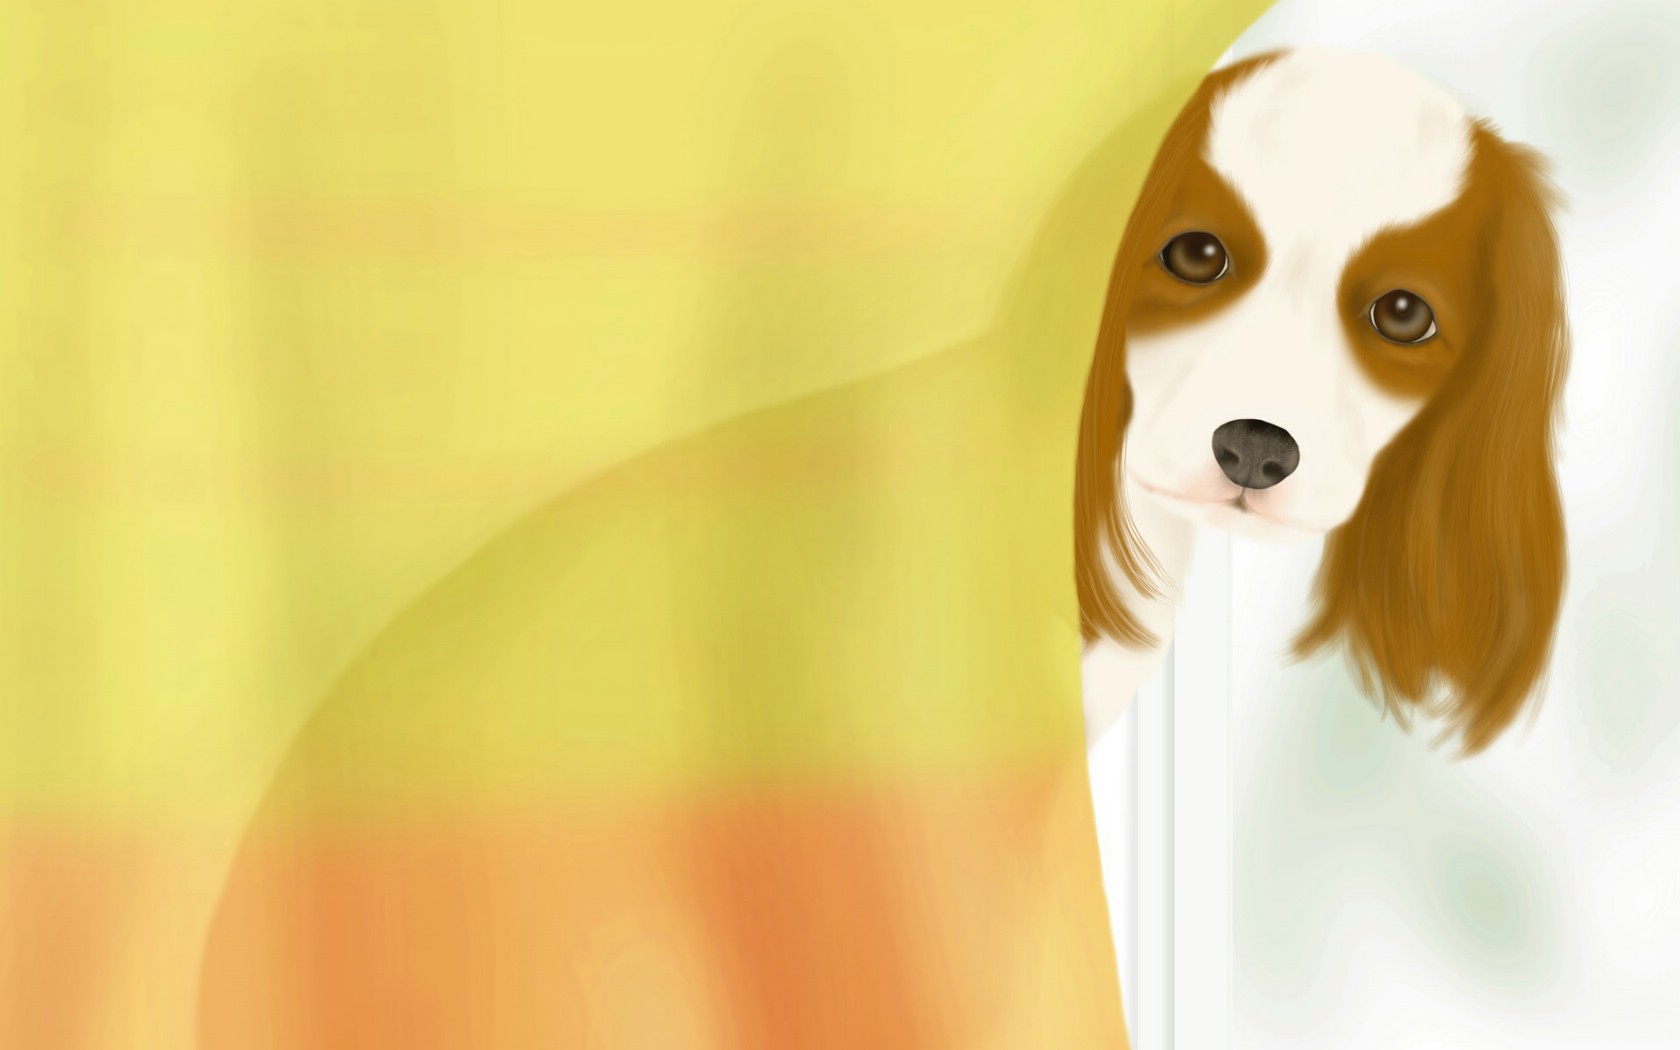 壁纸1680x1050 宠物狗狗的插画图片壁纸 Painter 柔和插画-我的宠物狗壁纸 Painter 柔和插画-我的宠物狗图片 Painter 柔和插画-我的宠物狗素材 动物壁纸 动物图库 动物图片素材桌面壁纸